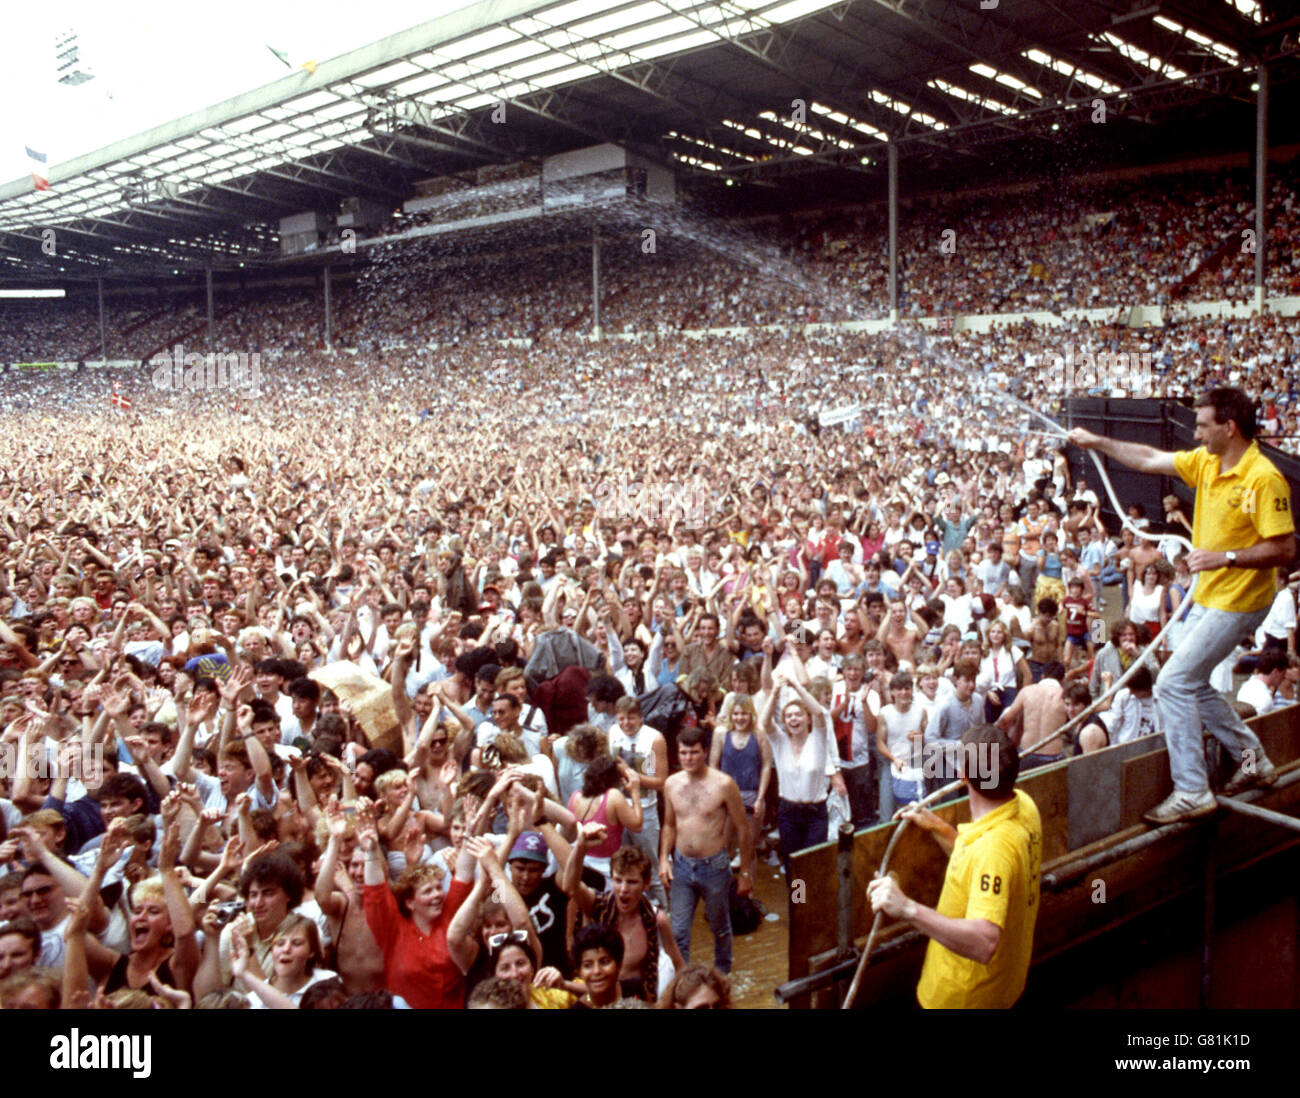 Квин стадион. 1985 Квин на стадионе Уэмбли. Концерт группы Queen стадион Уэмбли 1985. Концерт Фредди Меркьюри на стадионе Уэмбли в 1986. Фредди Меркьюри Уэмбли 1985.